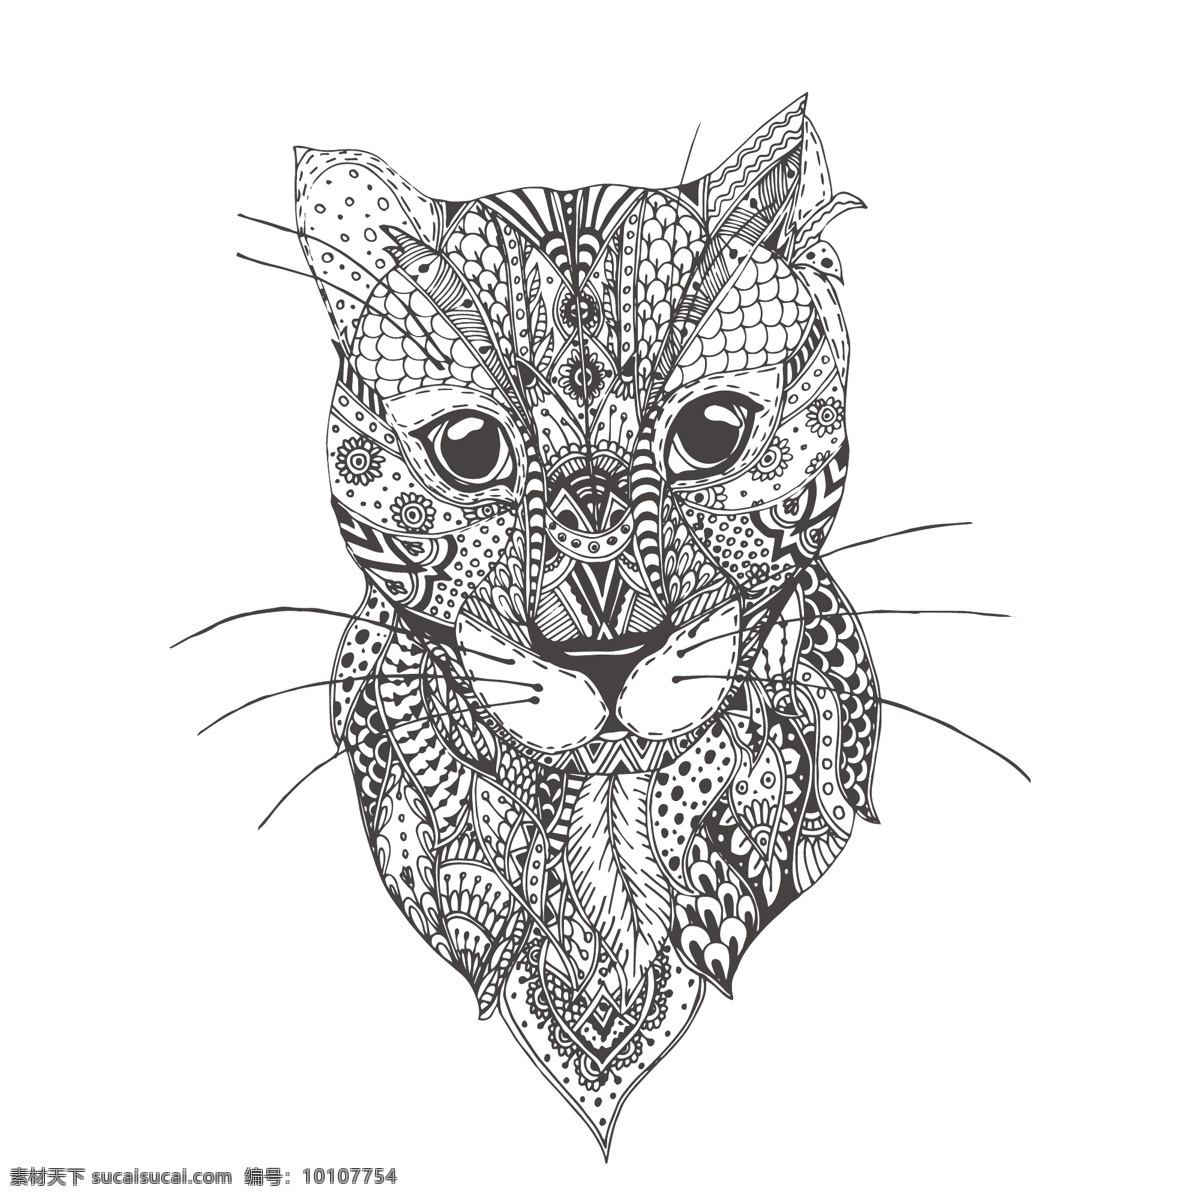 手绘 可爱 花纹 豹子 头像 创意 黑白 动物